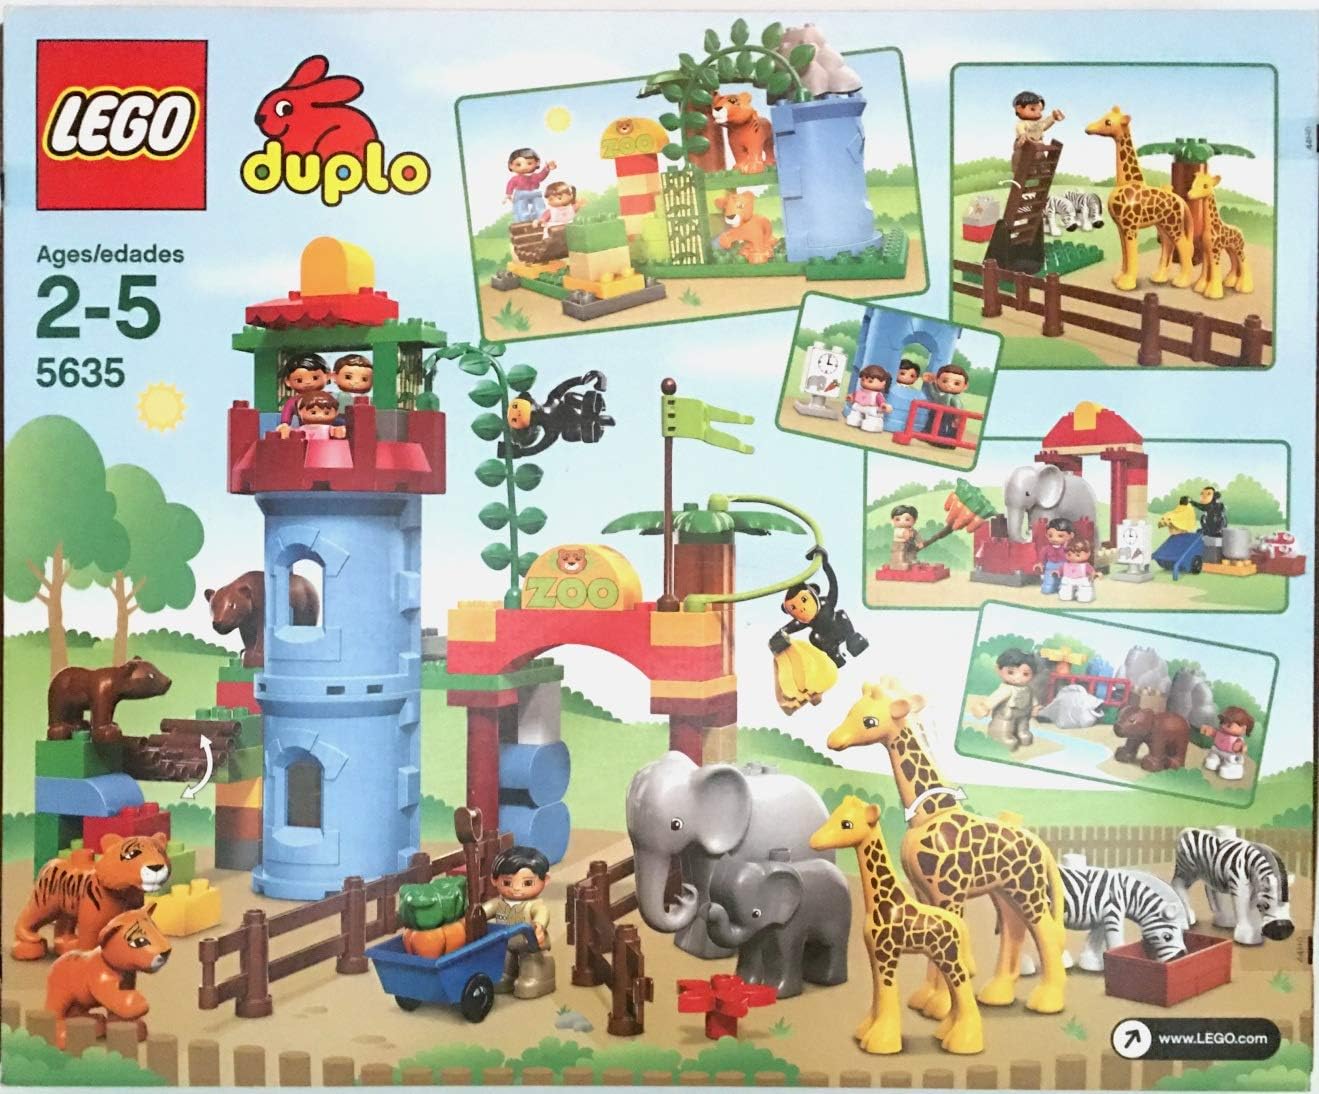 LEGO Duplo Ville 5635 Deluxe Zoo Set